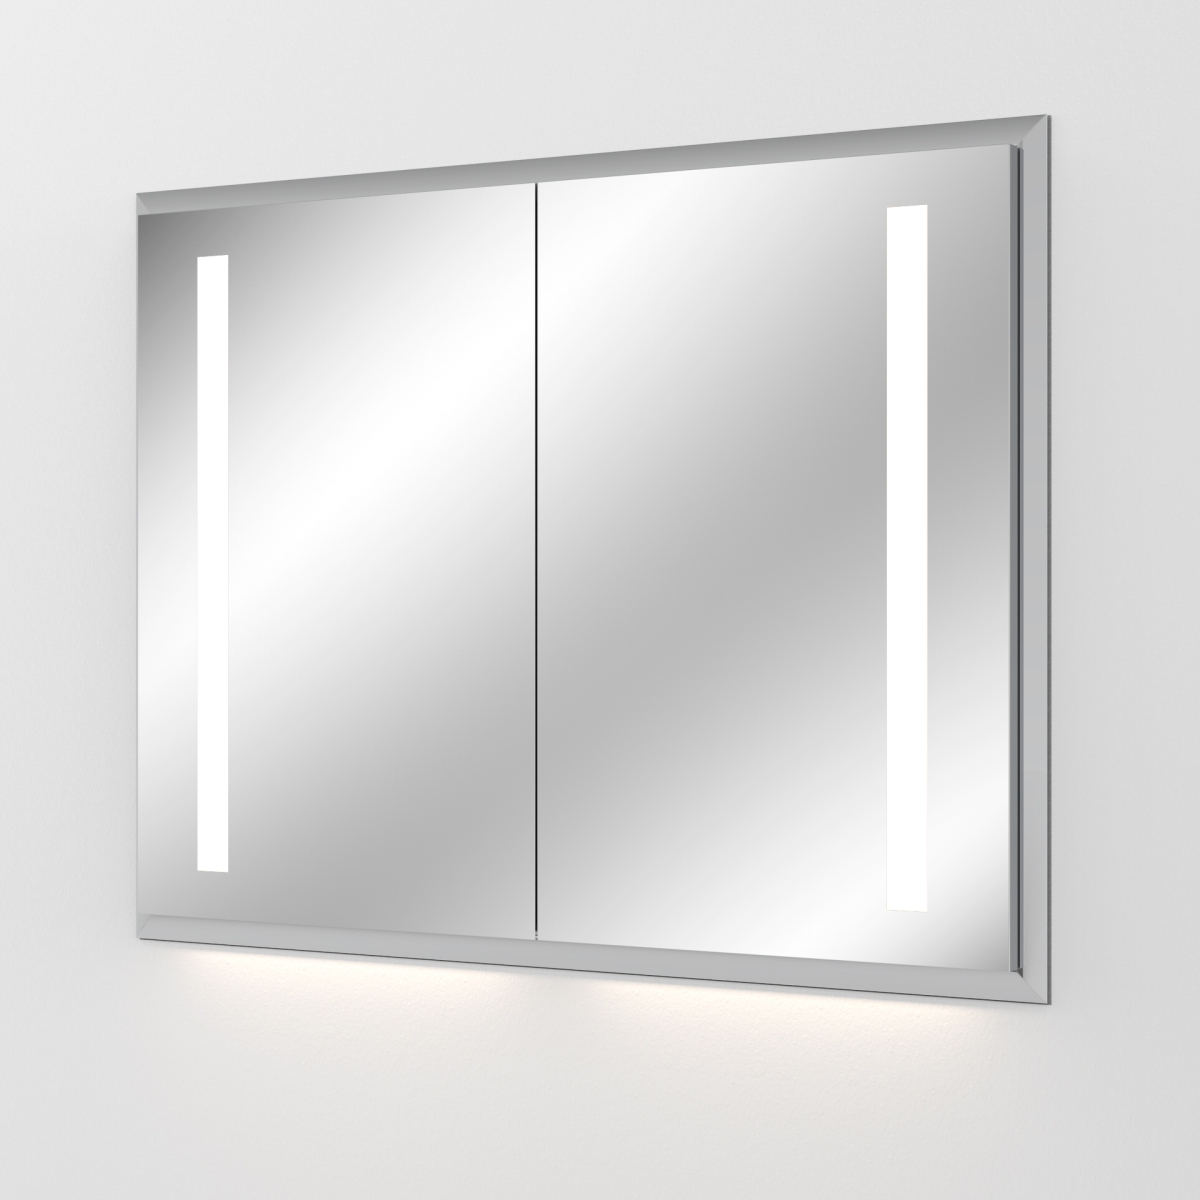 Sanipa Alu LED Einbau-Spiegelschrank Reflection Breite:1049mm, Tiefe:173mm AU3046L, Höhe:750mm, 1.641,38 € für In